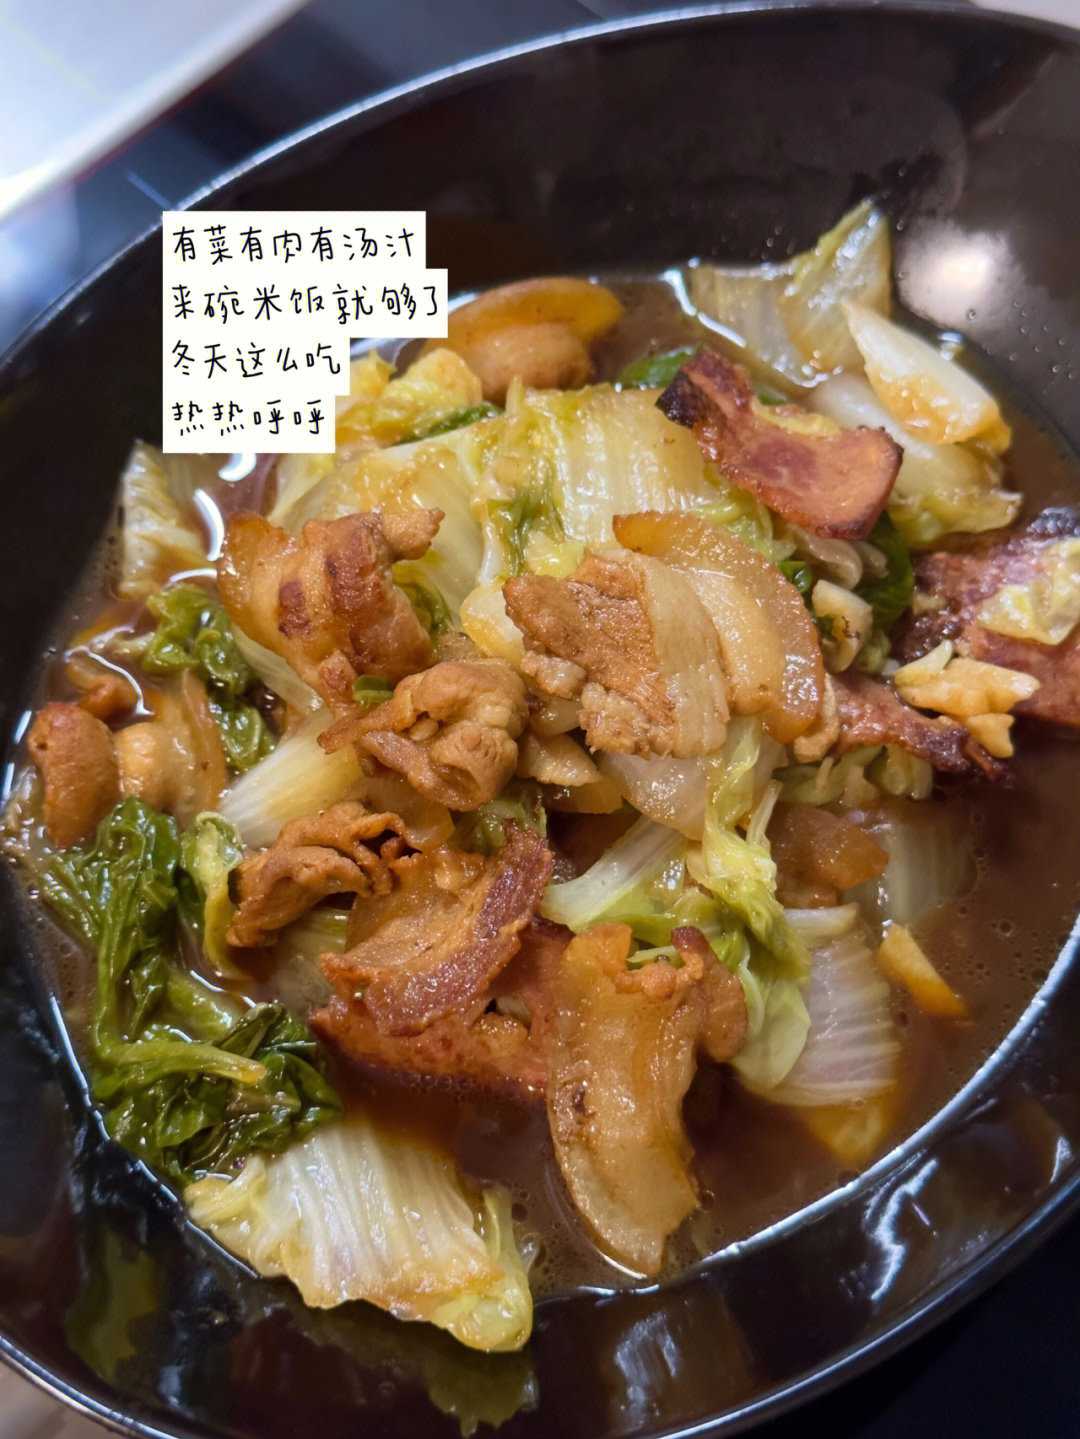 红烧猪肉罐头炖白菜图片